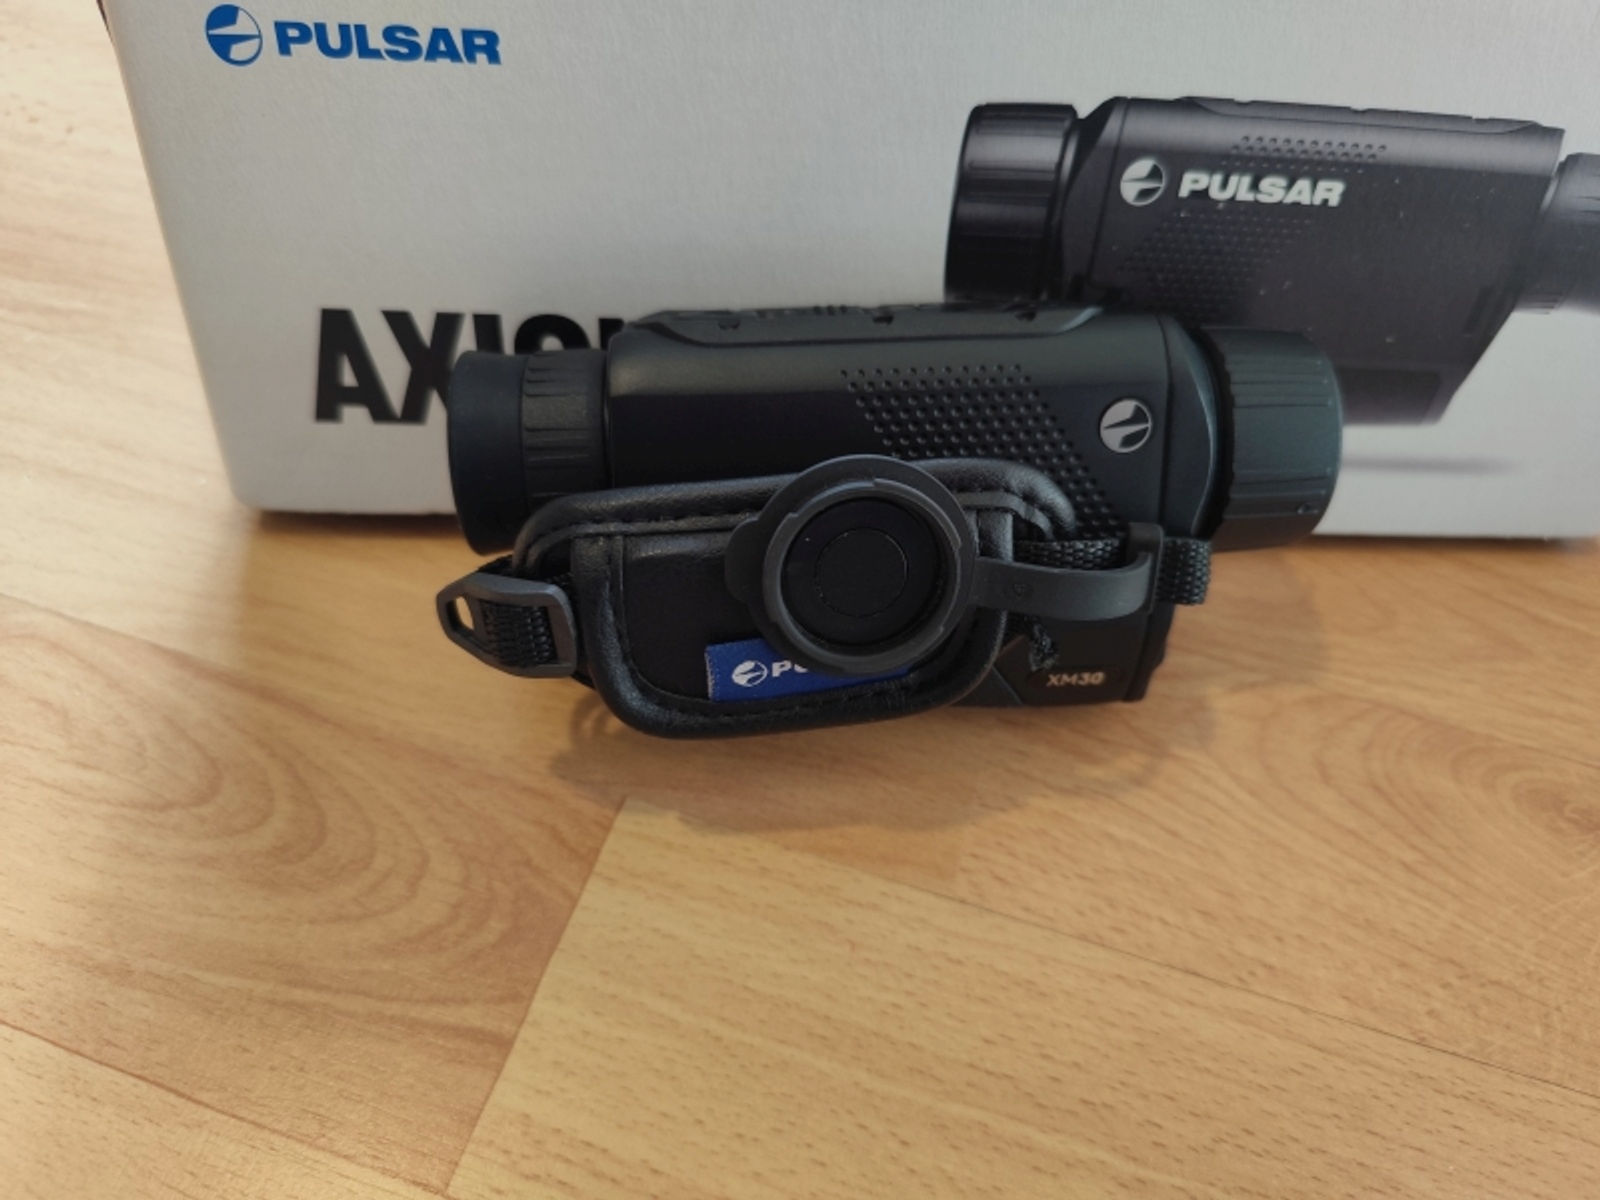 Pulsar Axion Key XM 30 Wärmebildkamera